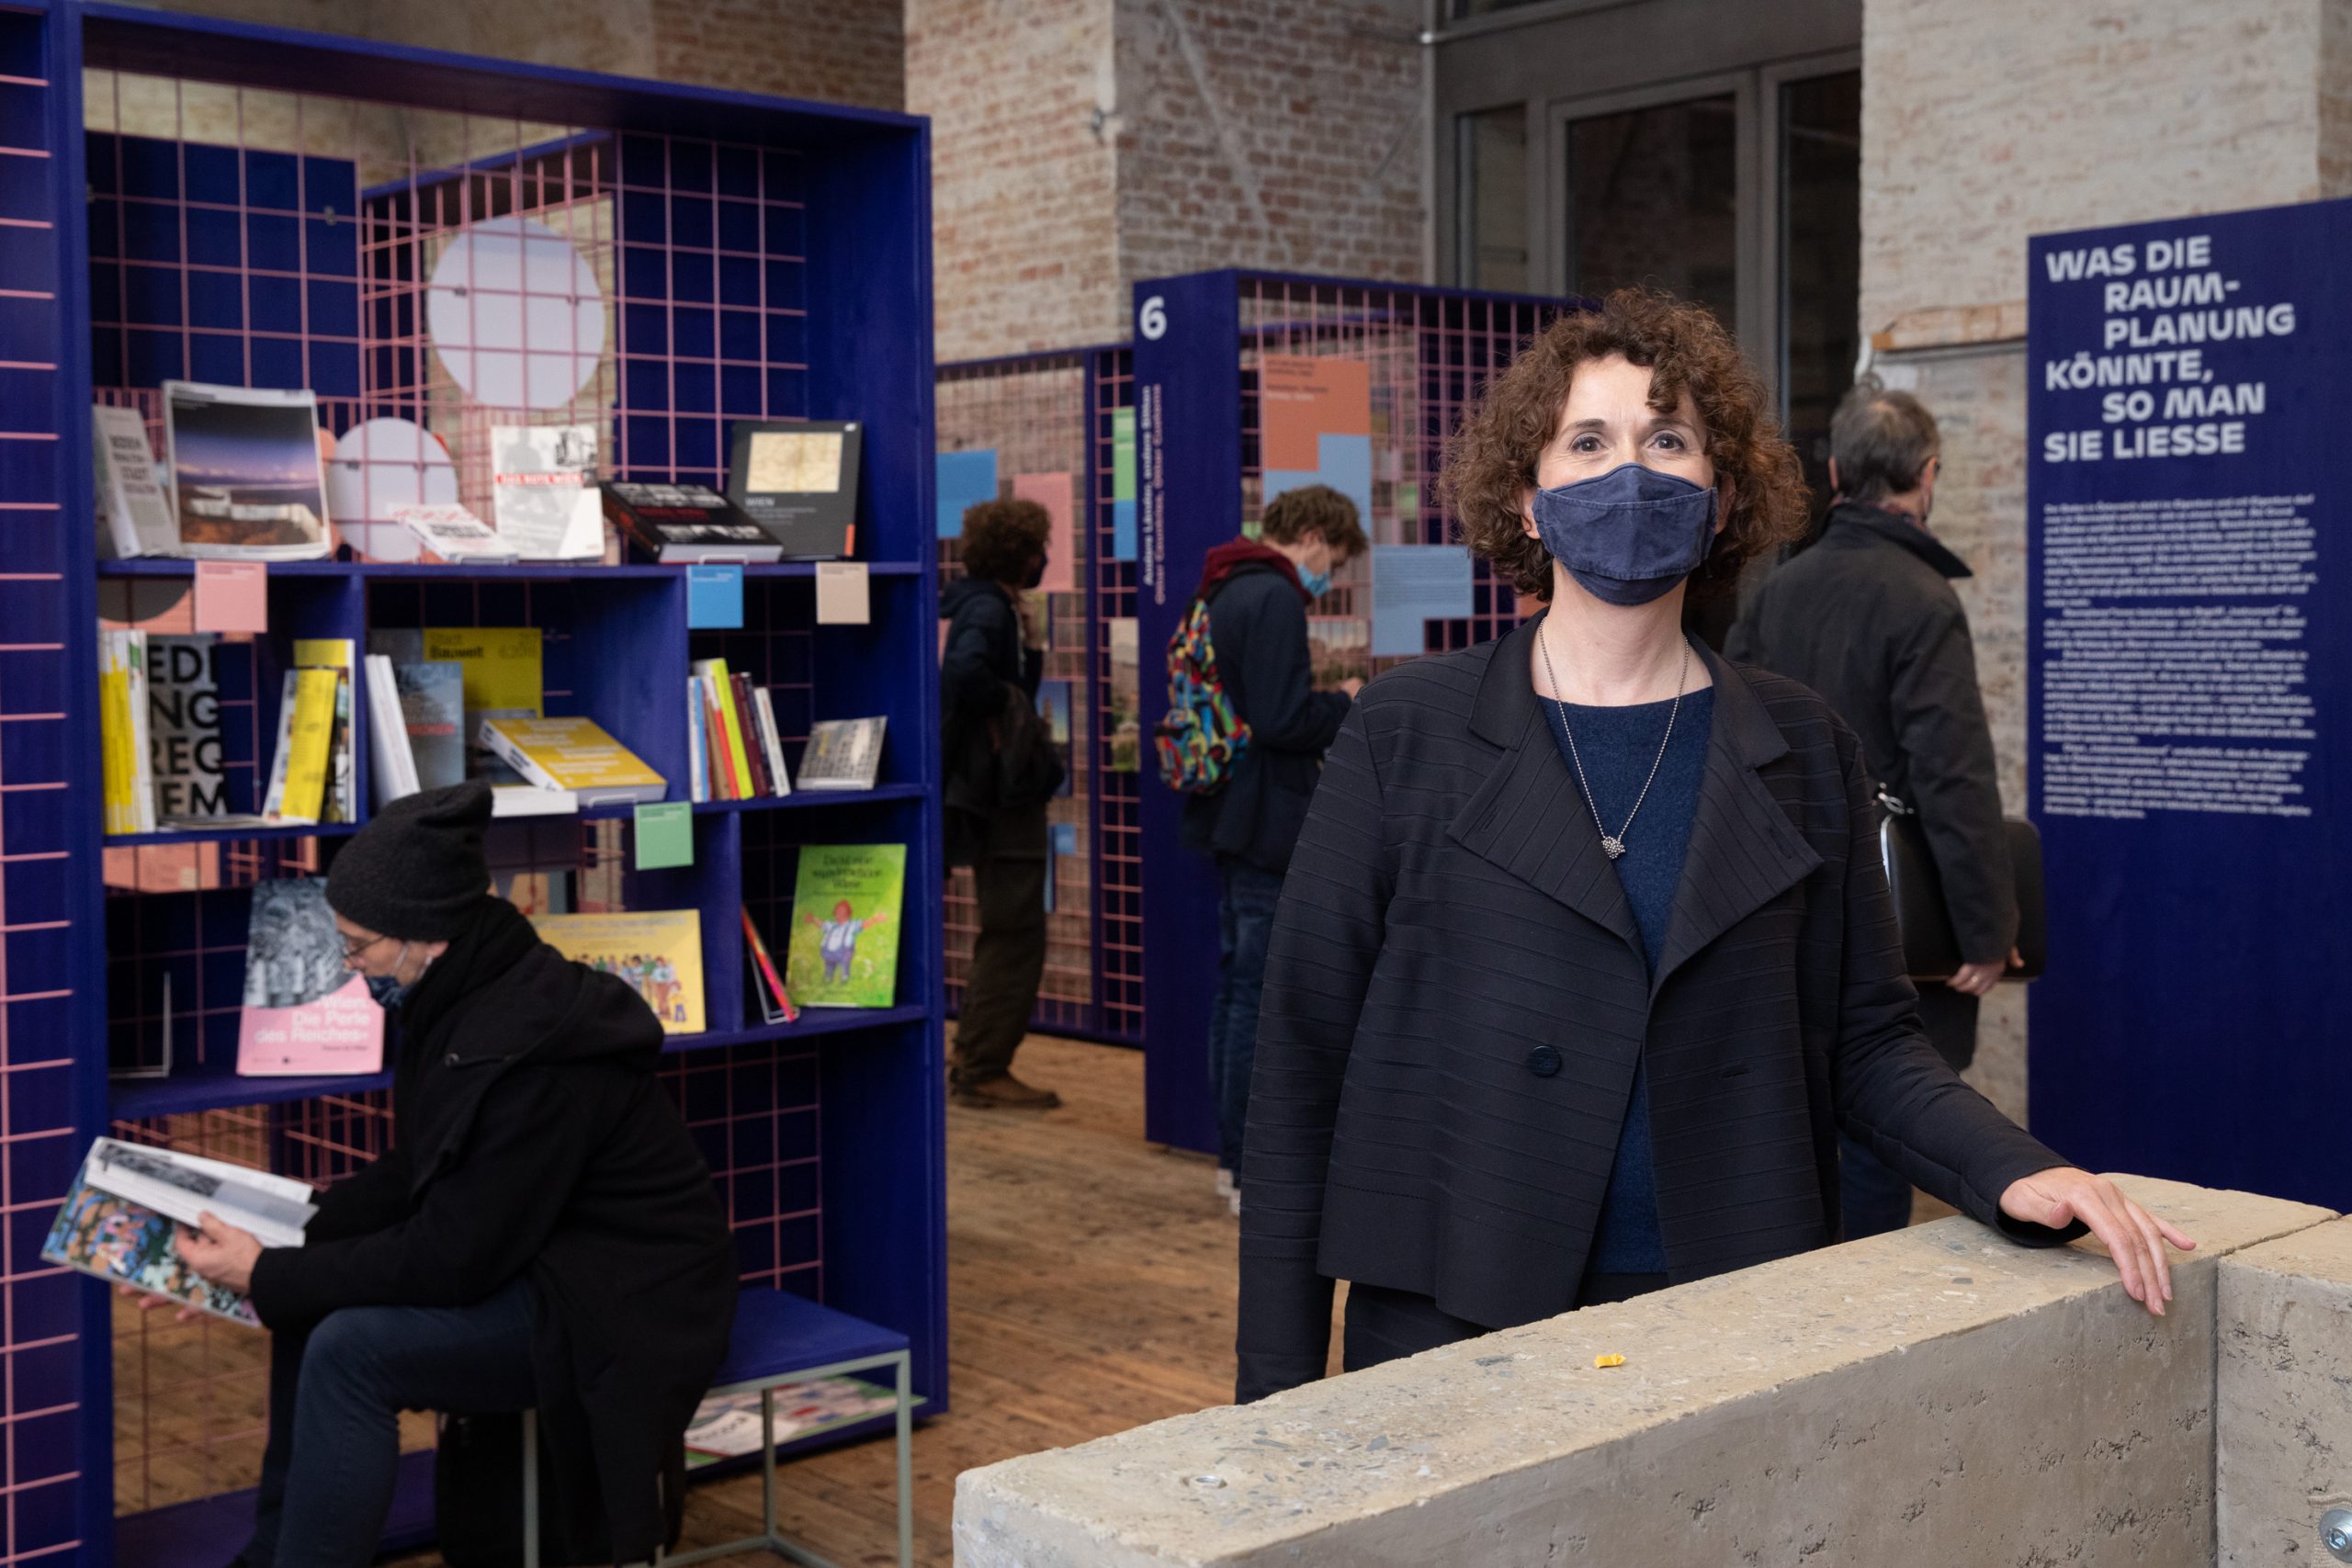 Frau mit dunklen Locken steht bei Betonwand in einer Ausstellung